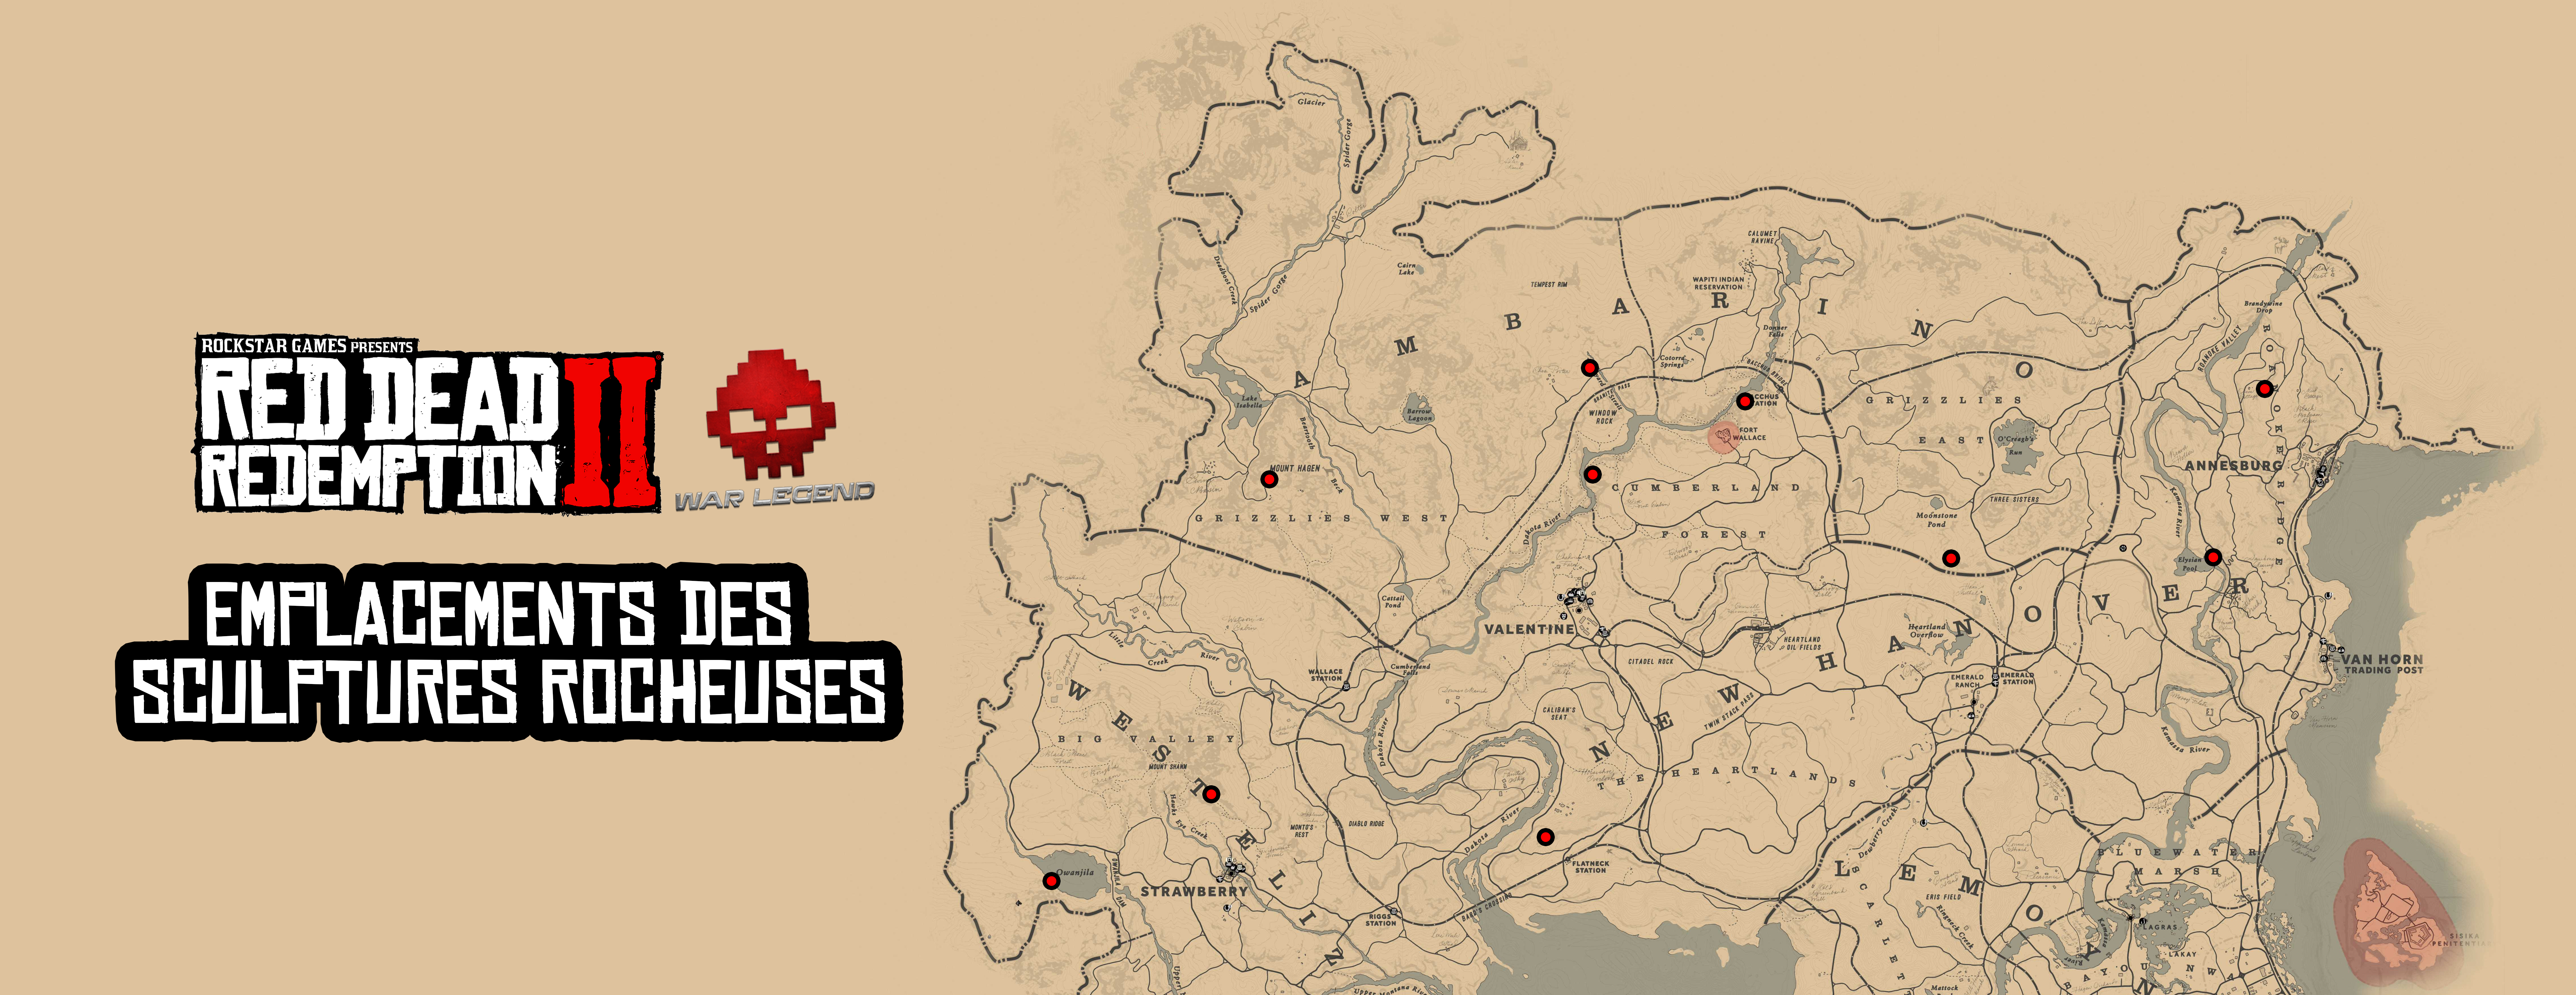 Soluce Red Dead Redemption 2 Petit guide du géologue amateur emplacement des sculptures rocheuses